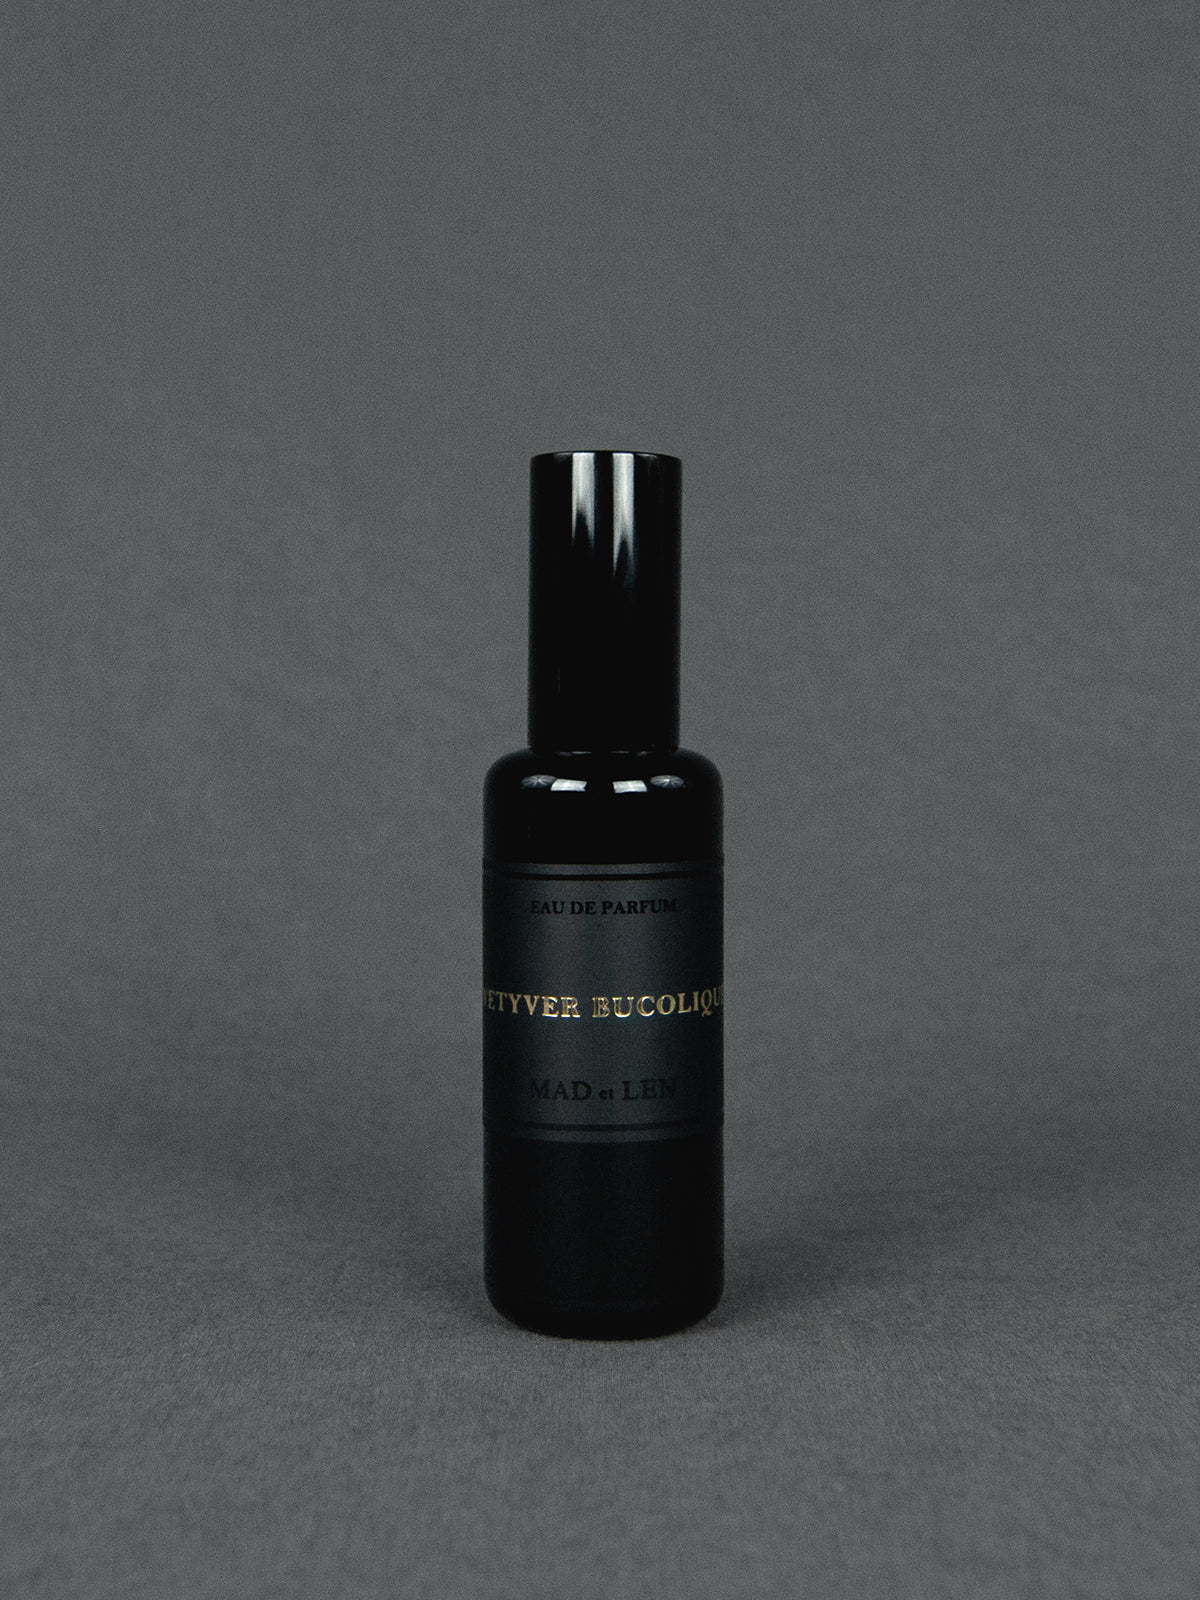 MAD et LEN - Vetyver Bucolique Eau de Parfum 50 ml | BFORM – BADINFORM